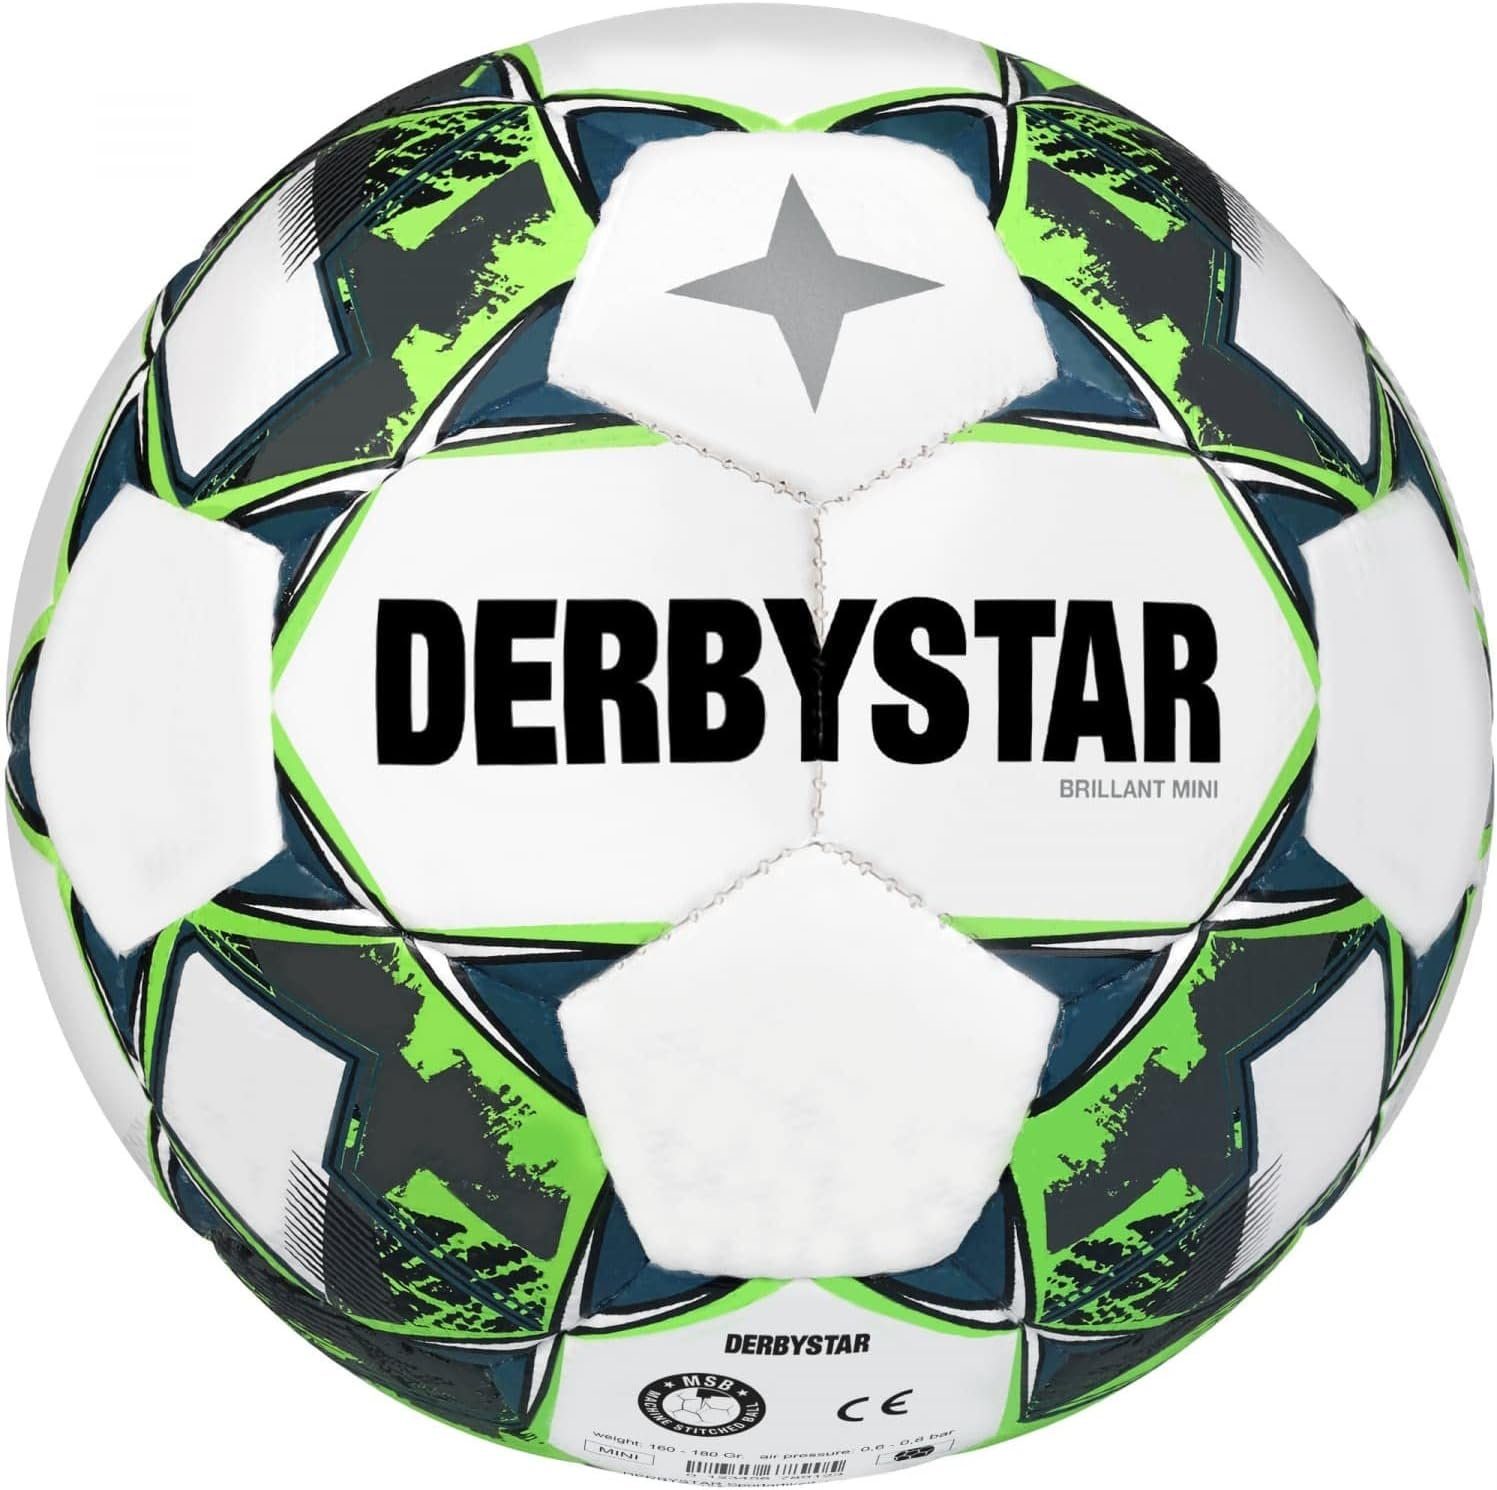 Derbystar Mini FB Fußball Derbystar Brillant V22